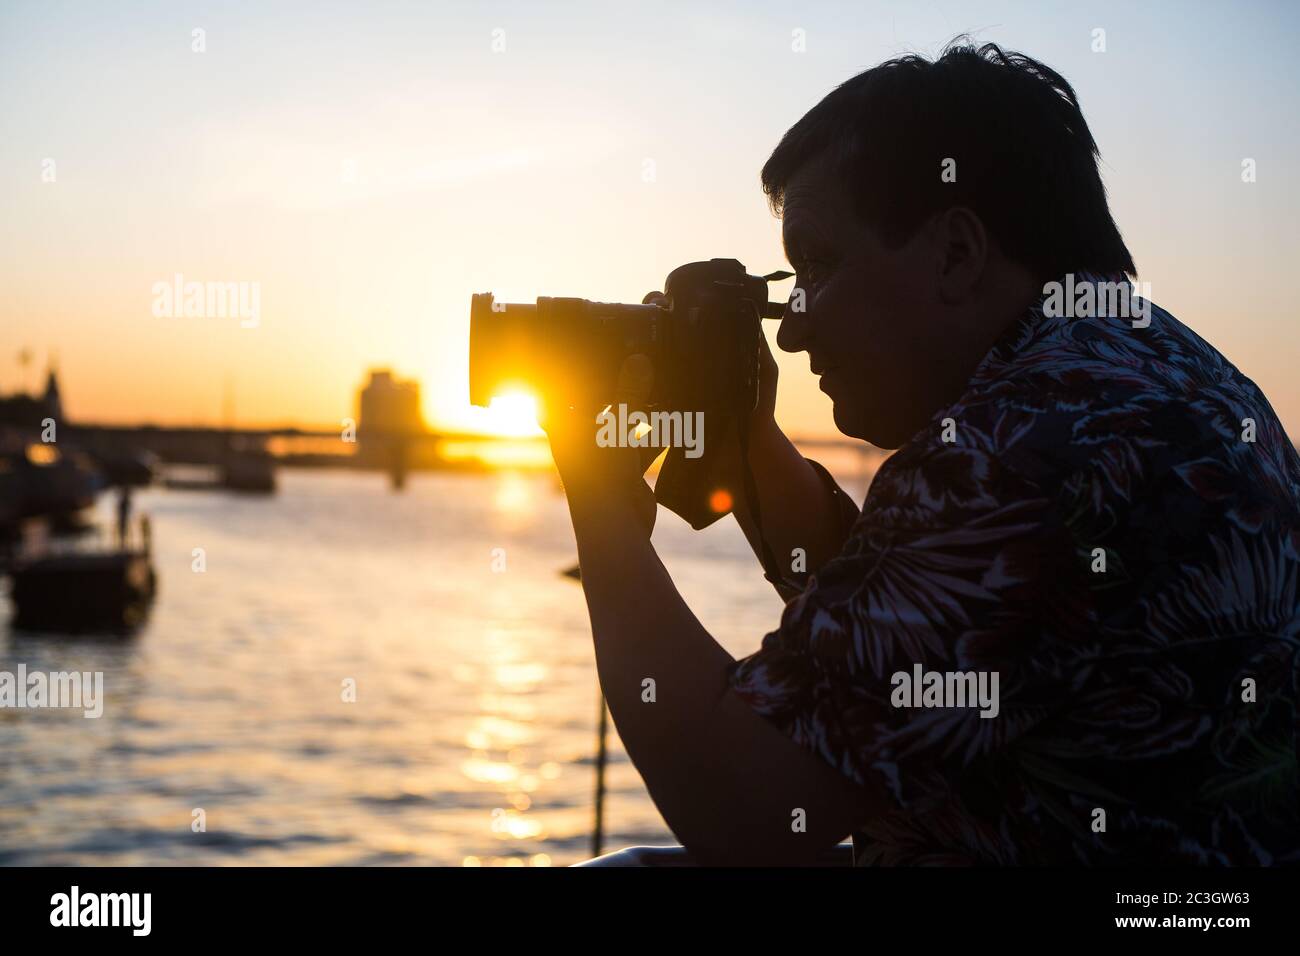 Professionelle Fotografie mit einer DSLR-Kamera, die in Dnepropetrovsk am Ufer des Flusses Dnepr, einem berühmten Touristenort im Sommer in der Ukraine im Süden, aufgenommen wurde. Stockfoto